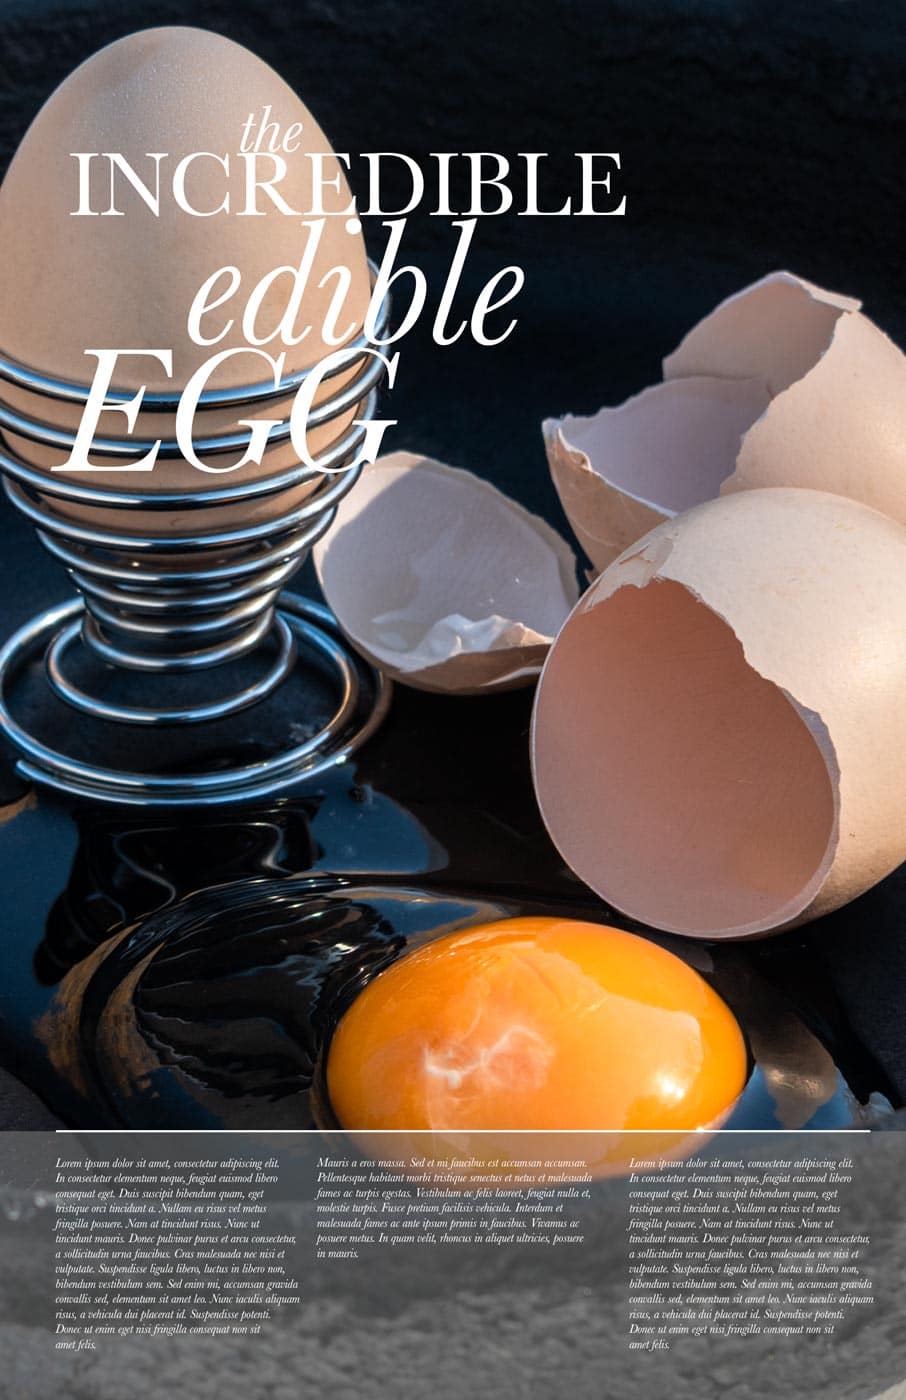 Edible egg design concept